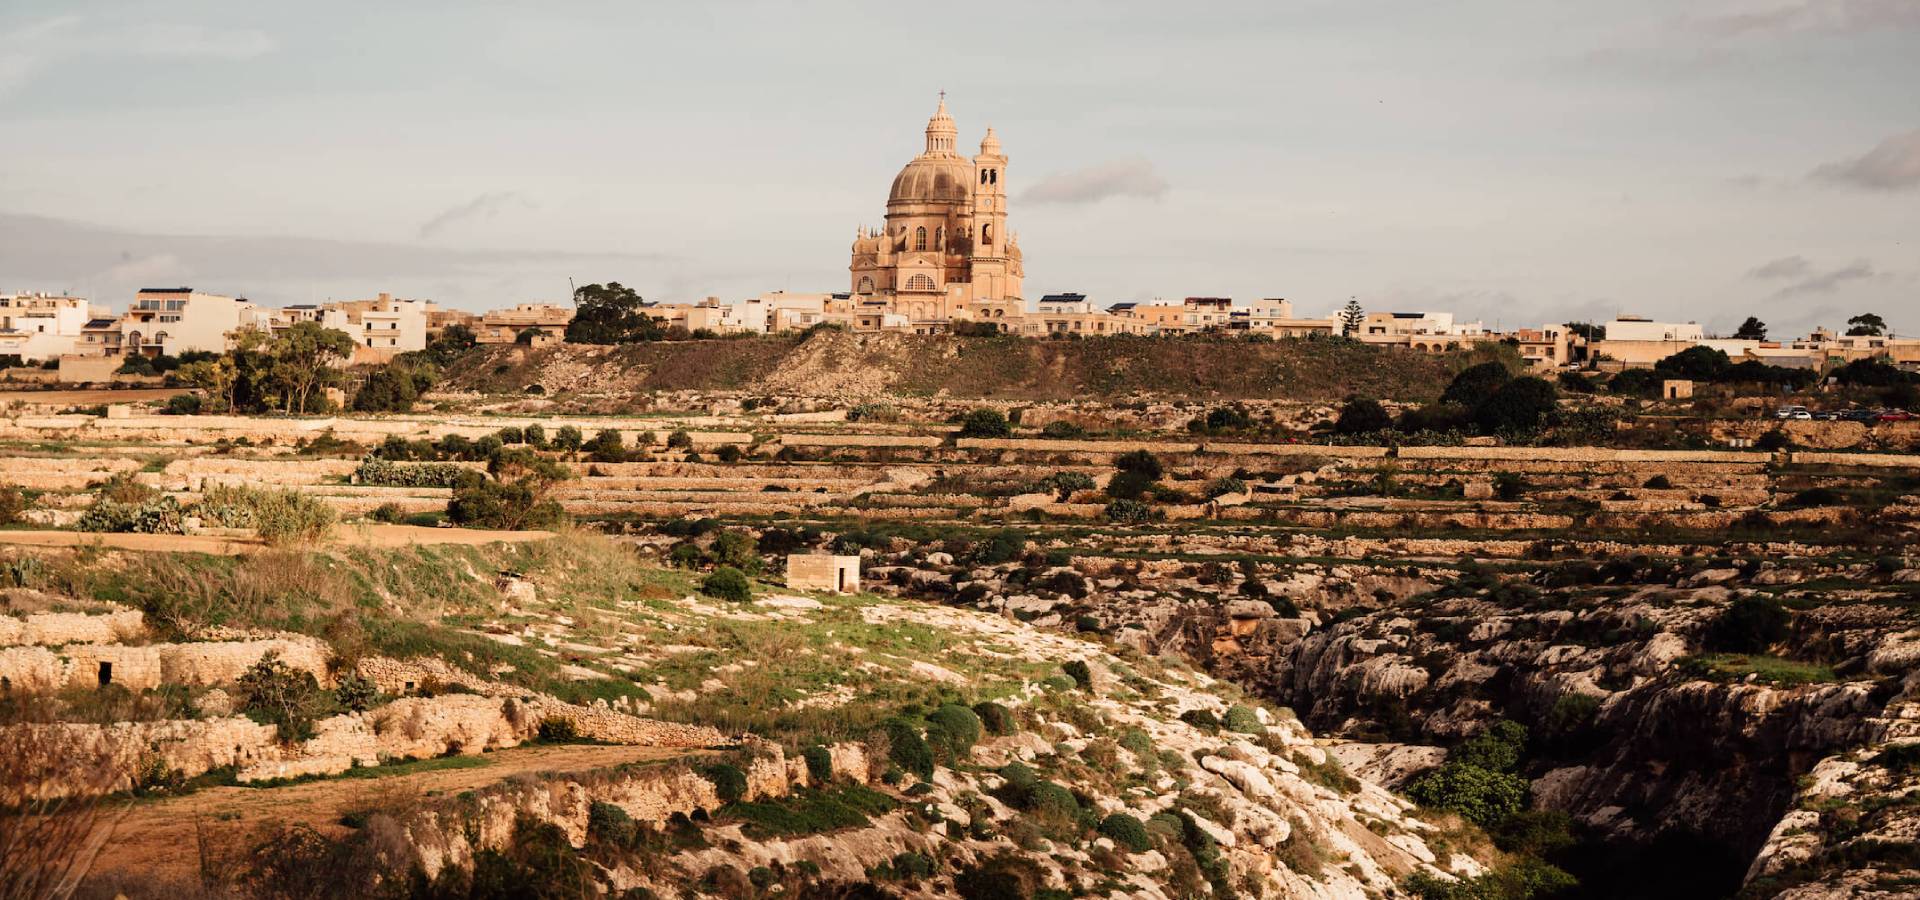 10 míst, která vidět na ostrově Gozo